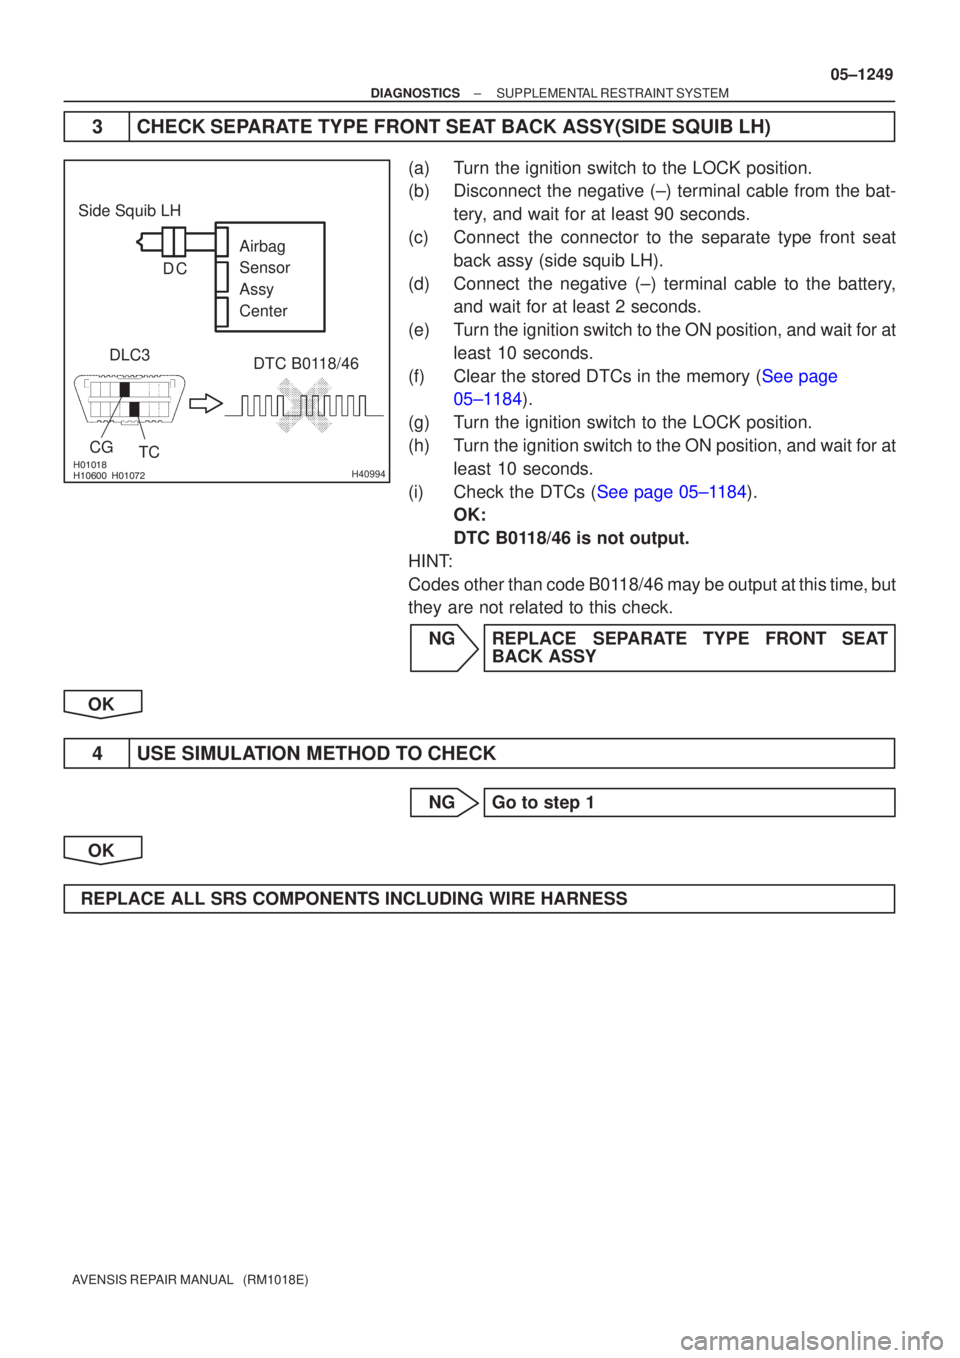 TOYOTA AVENSIS 2005  Service Repair Manual 
 H40994
Side Squib LHDTC B0118/46
DLC3
TC
CG Airbag 
Sensor 
Assy
Center
C
D
±
DIAGNOSTICS SUPPLEMENTAL RESTRAINT SYSTEM
05±1249
AVENSIS REPAIR MANUAL   (RM1018E)
3 CHECK SEPARATE